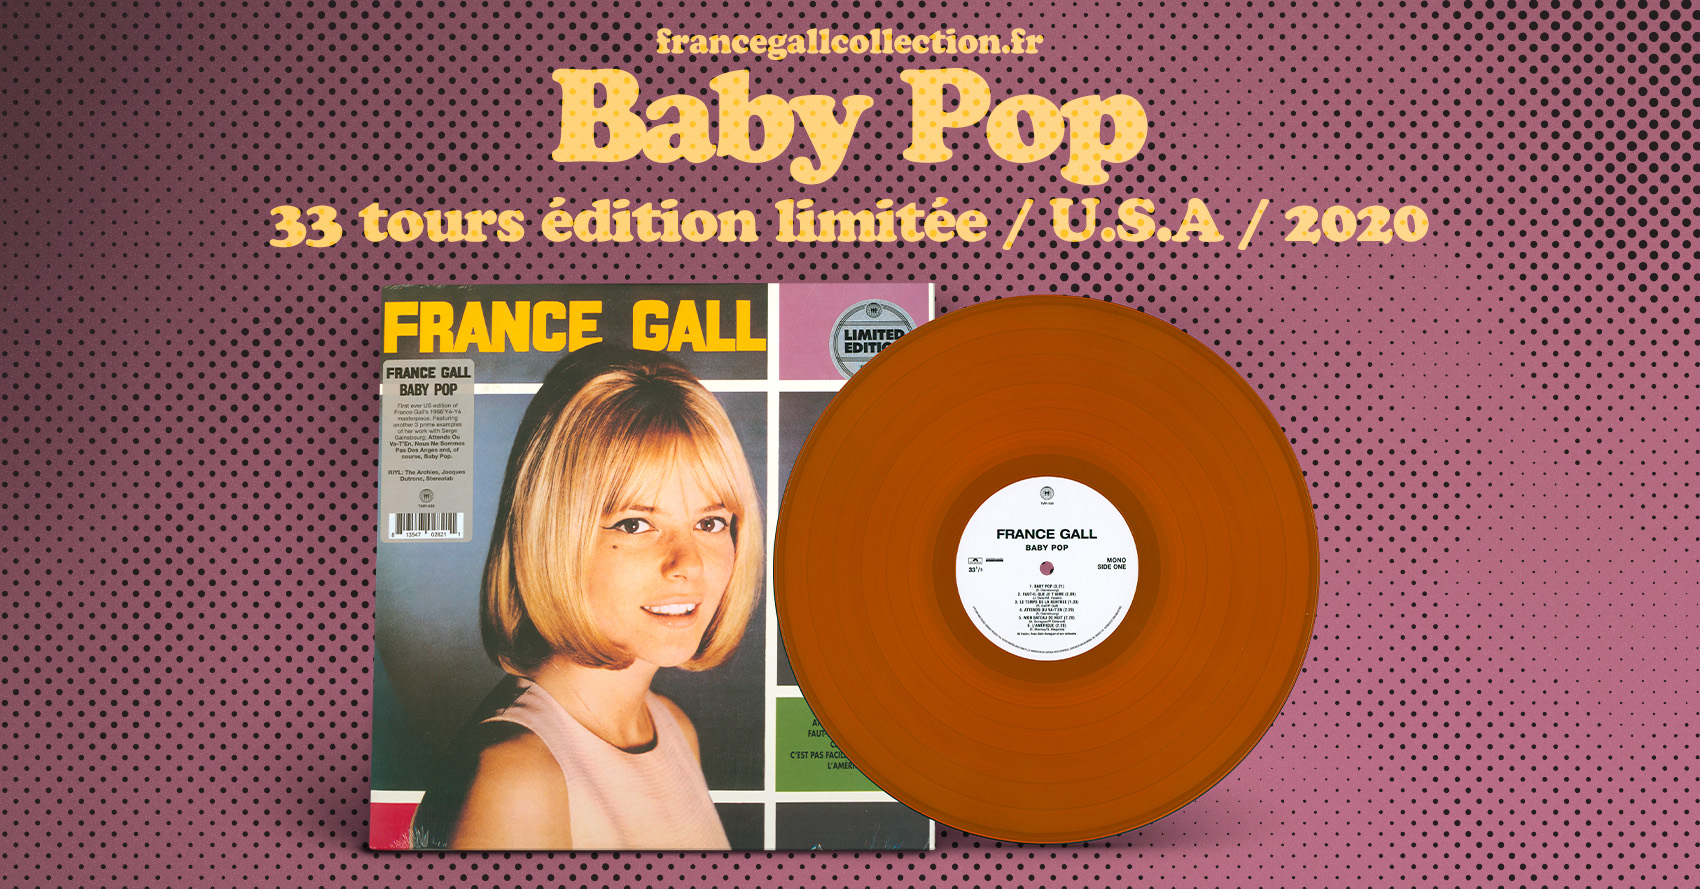 Réédition en édition limitée, parue pour les États-Unis au format 33 tours de 180g le 21 février 2020, de l'album Baby Pop publié initialement en octobre 1966, en pleine période yéyé.